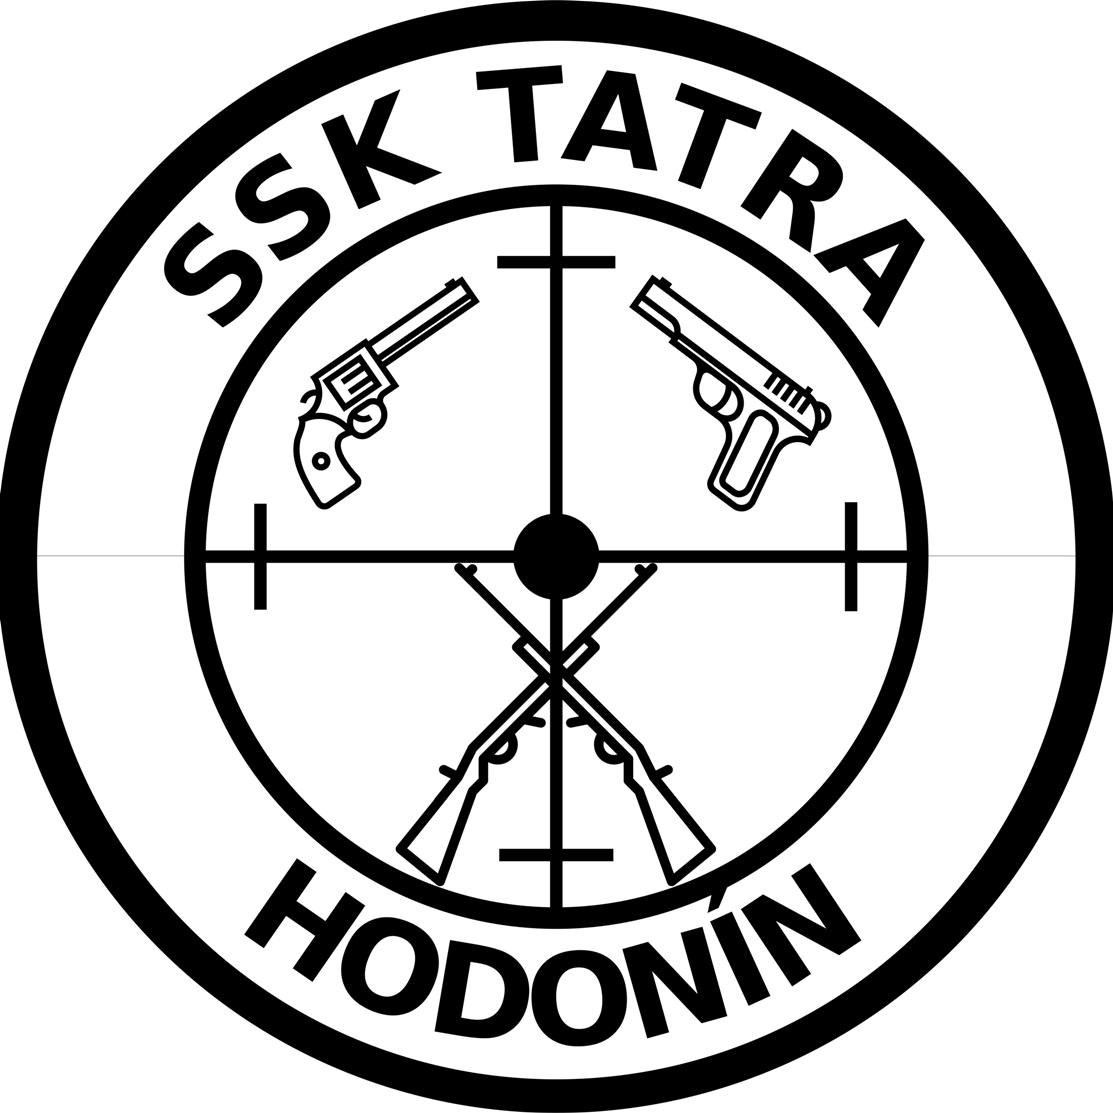 SSK Hodonín logo